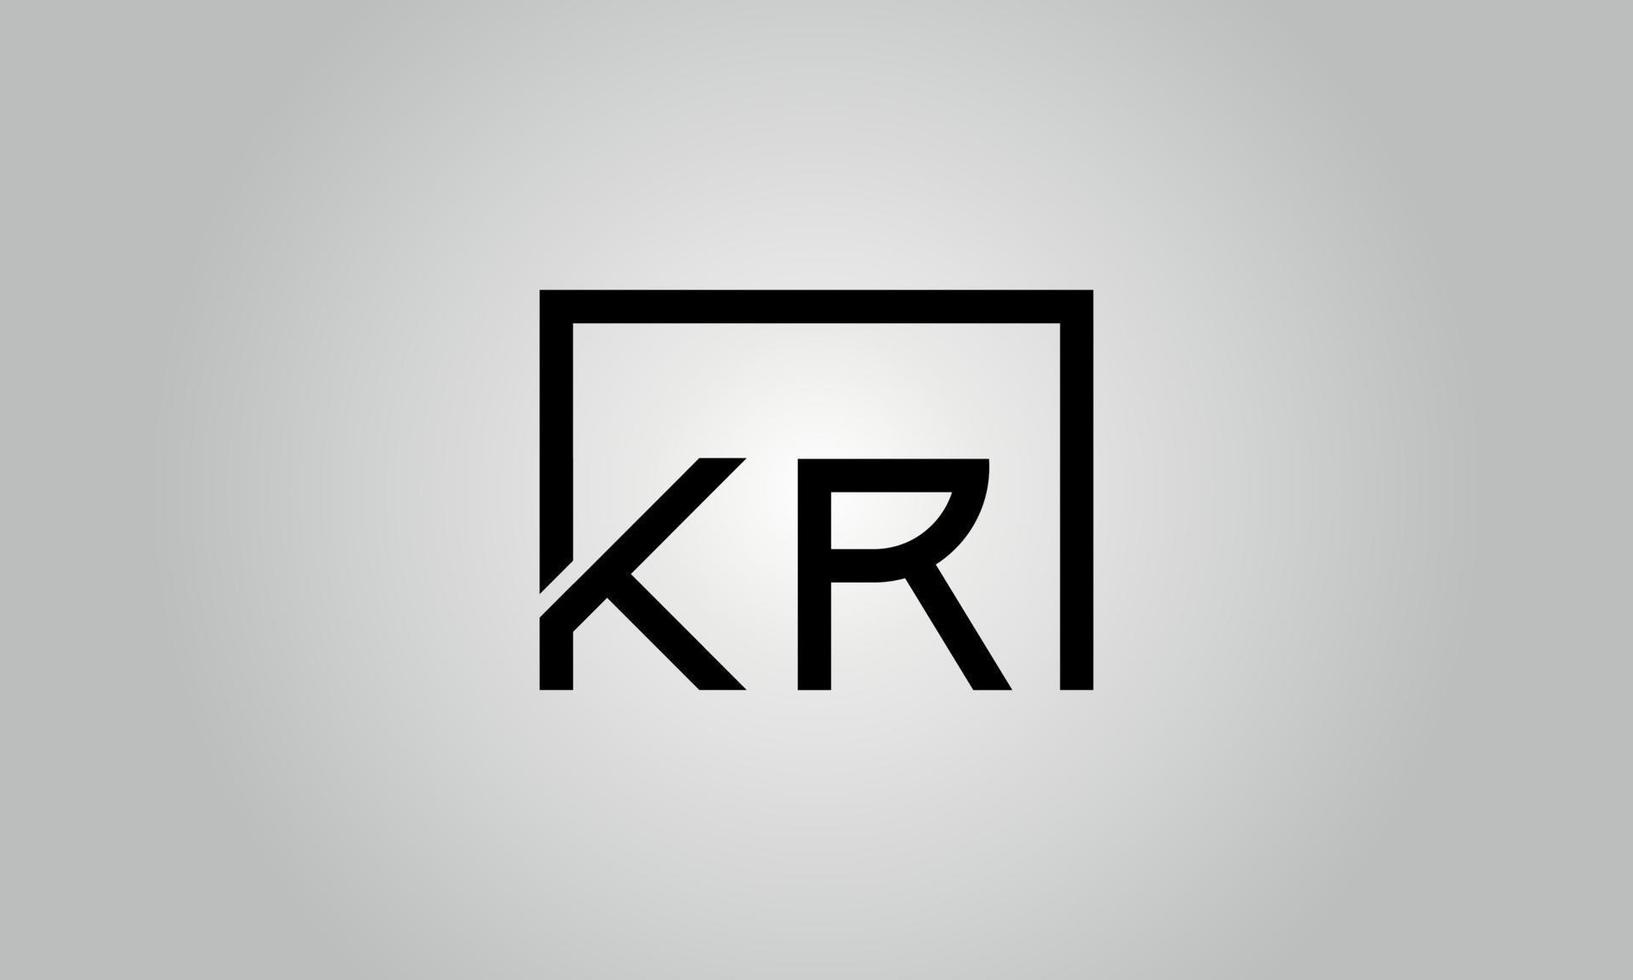 création de logo lettre kr. logo kr avec forme carrée dans le modèle vectoriel gratuit de couleurs noires.